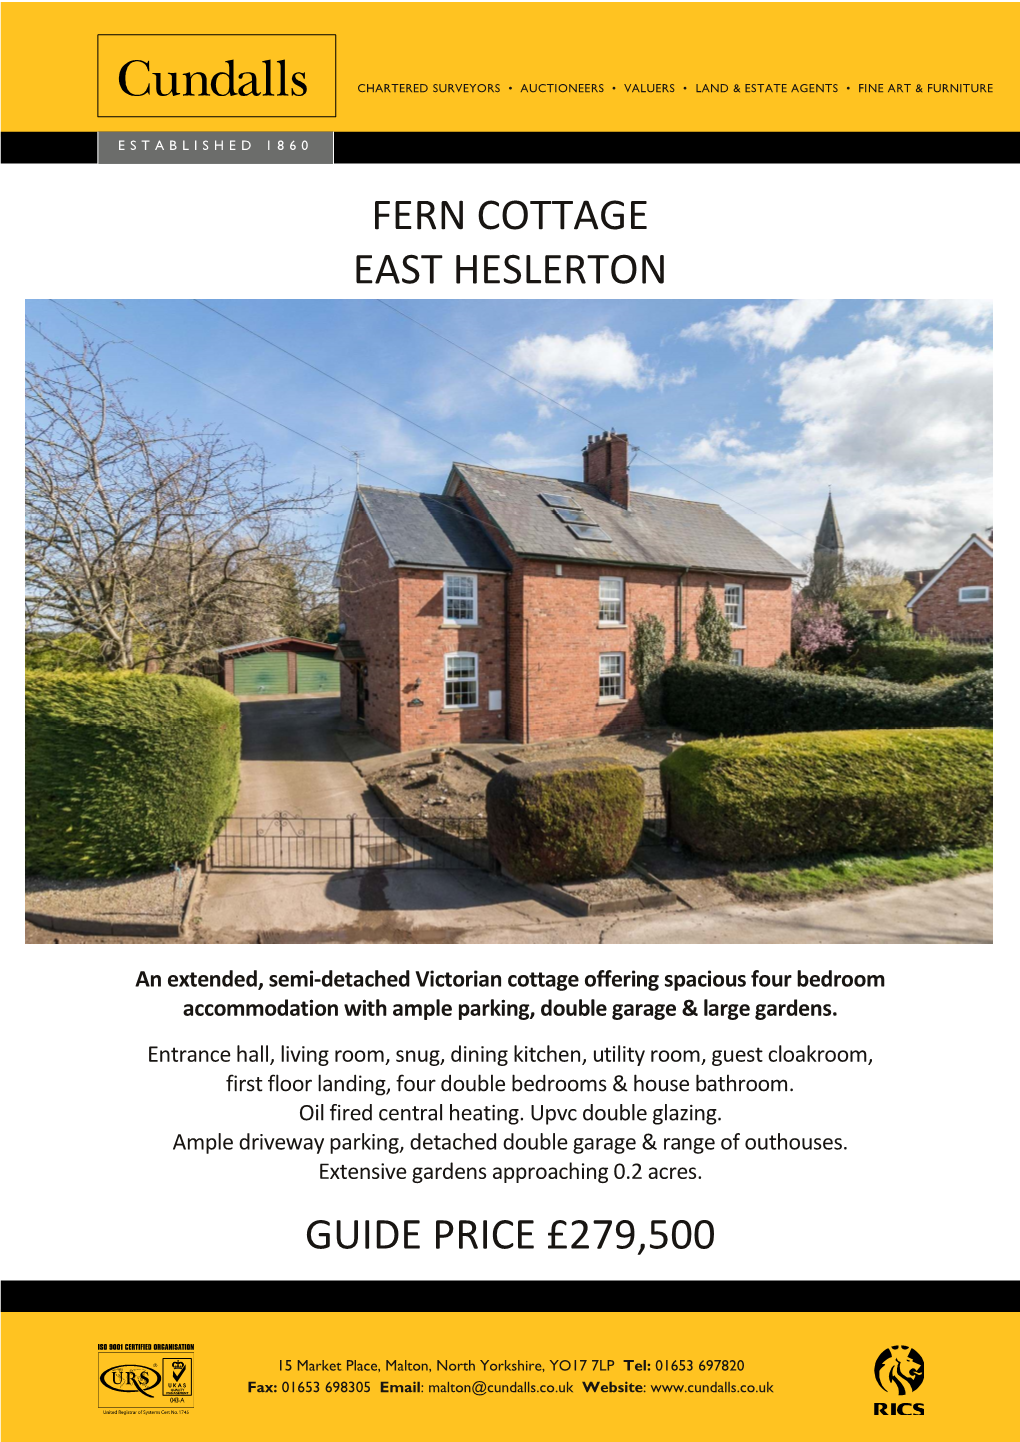 Fern Cottage East Heslerton Guide Price £279,500